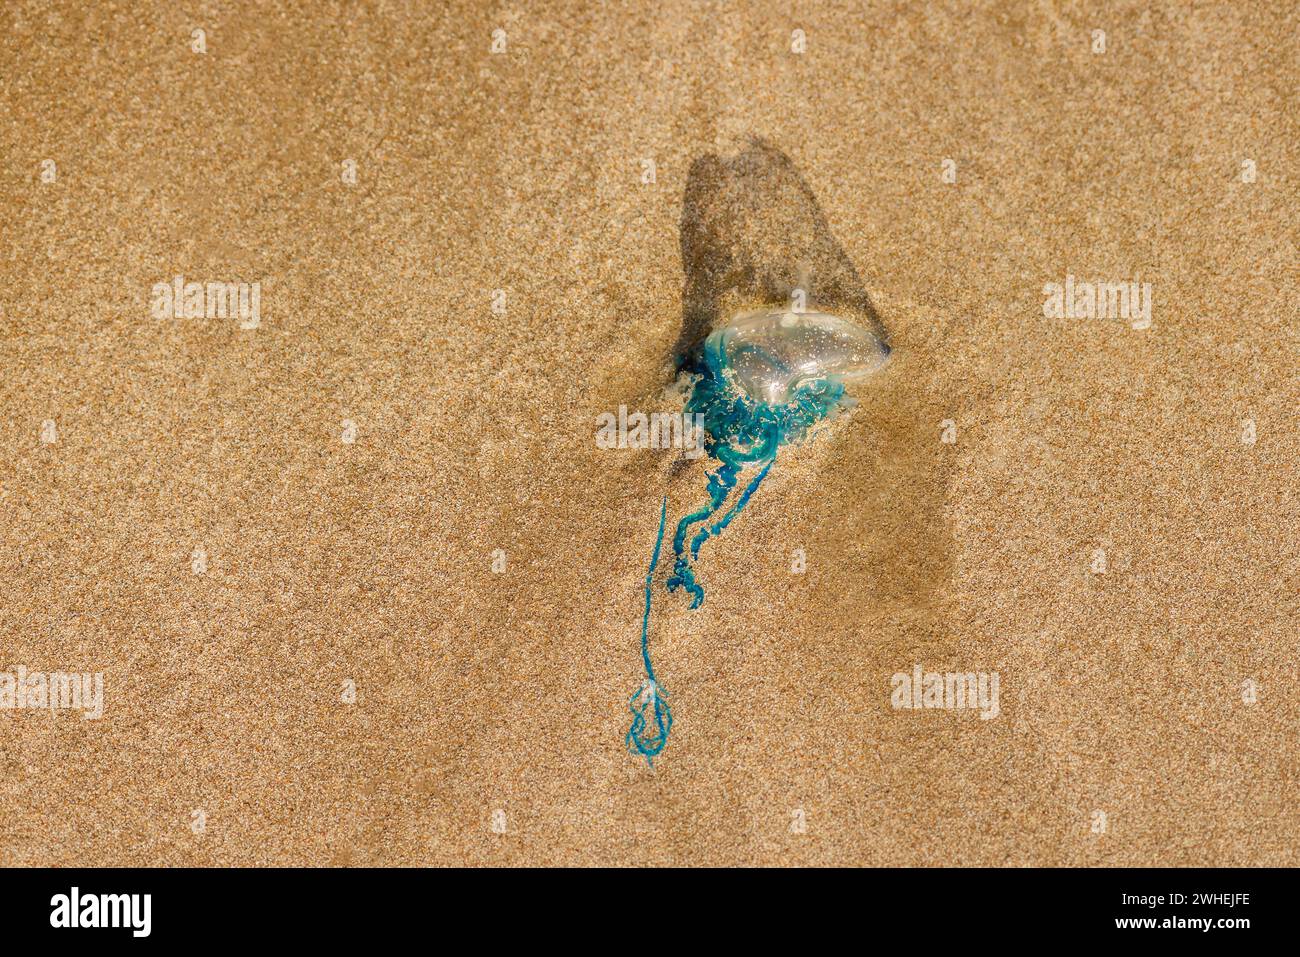 Homme de guerre portugais méduse physalia créature marine venimeuse dangereuse lavée à terre morte sur la plage de sable à Trinité-et-Tobago Banque D'Images